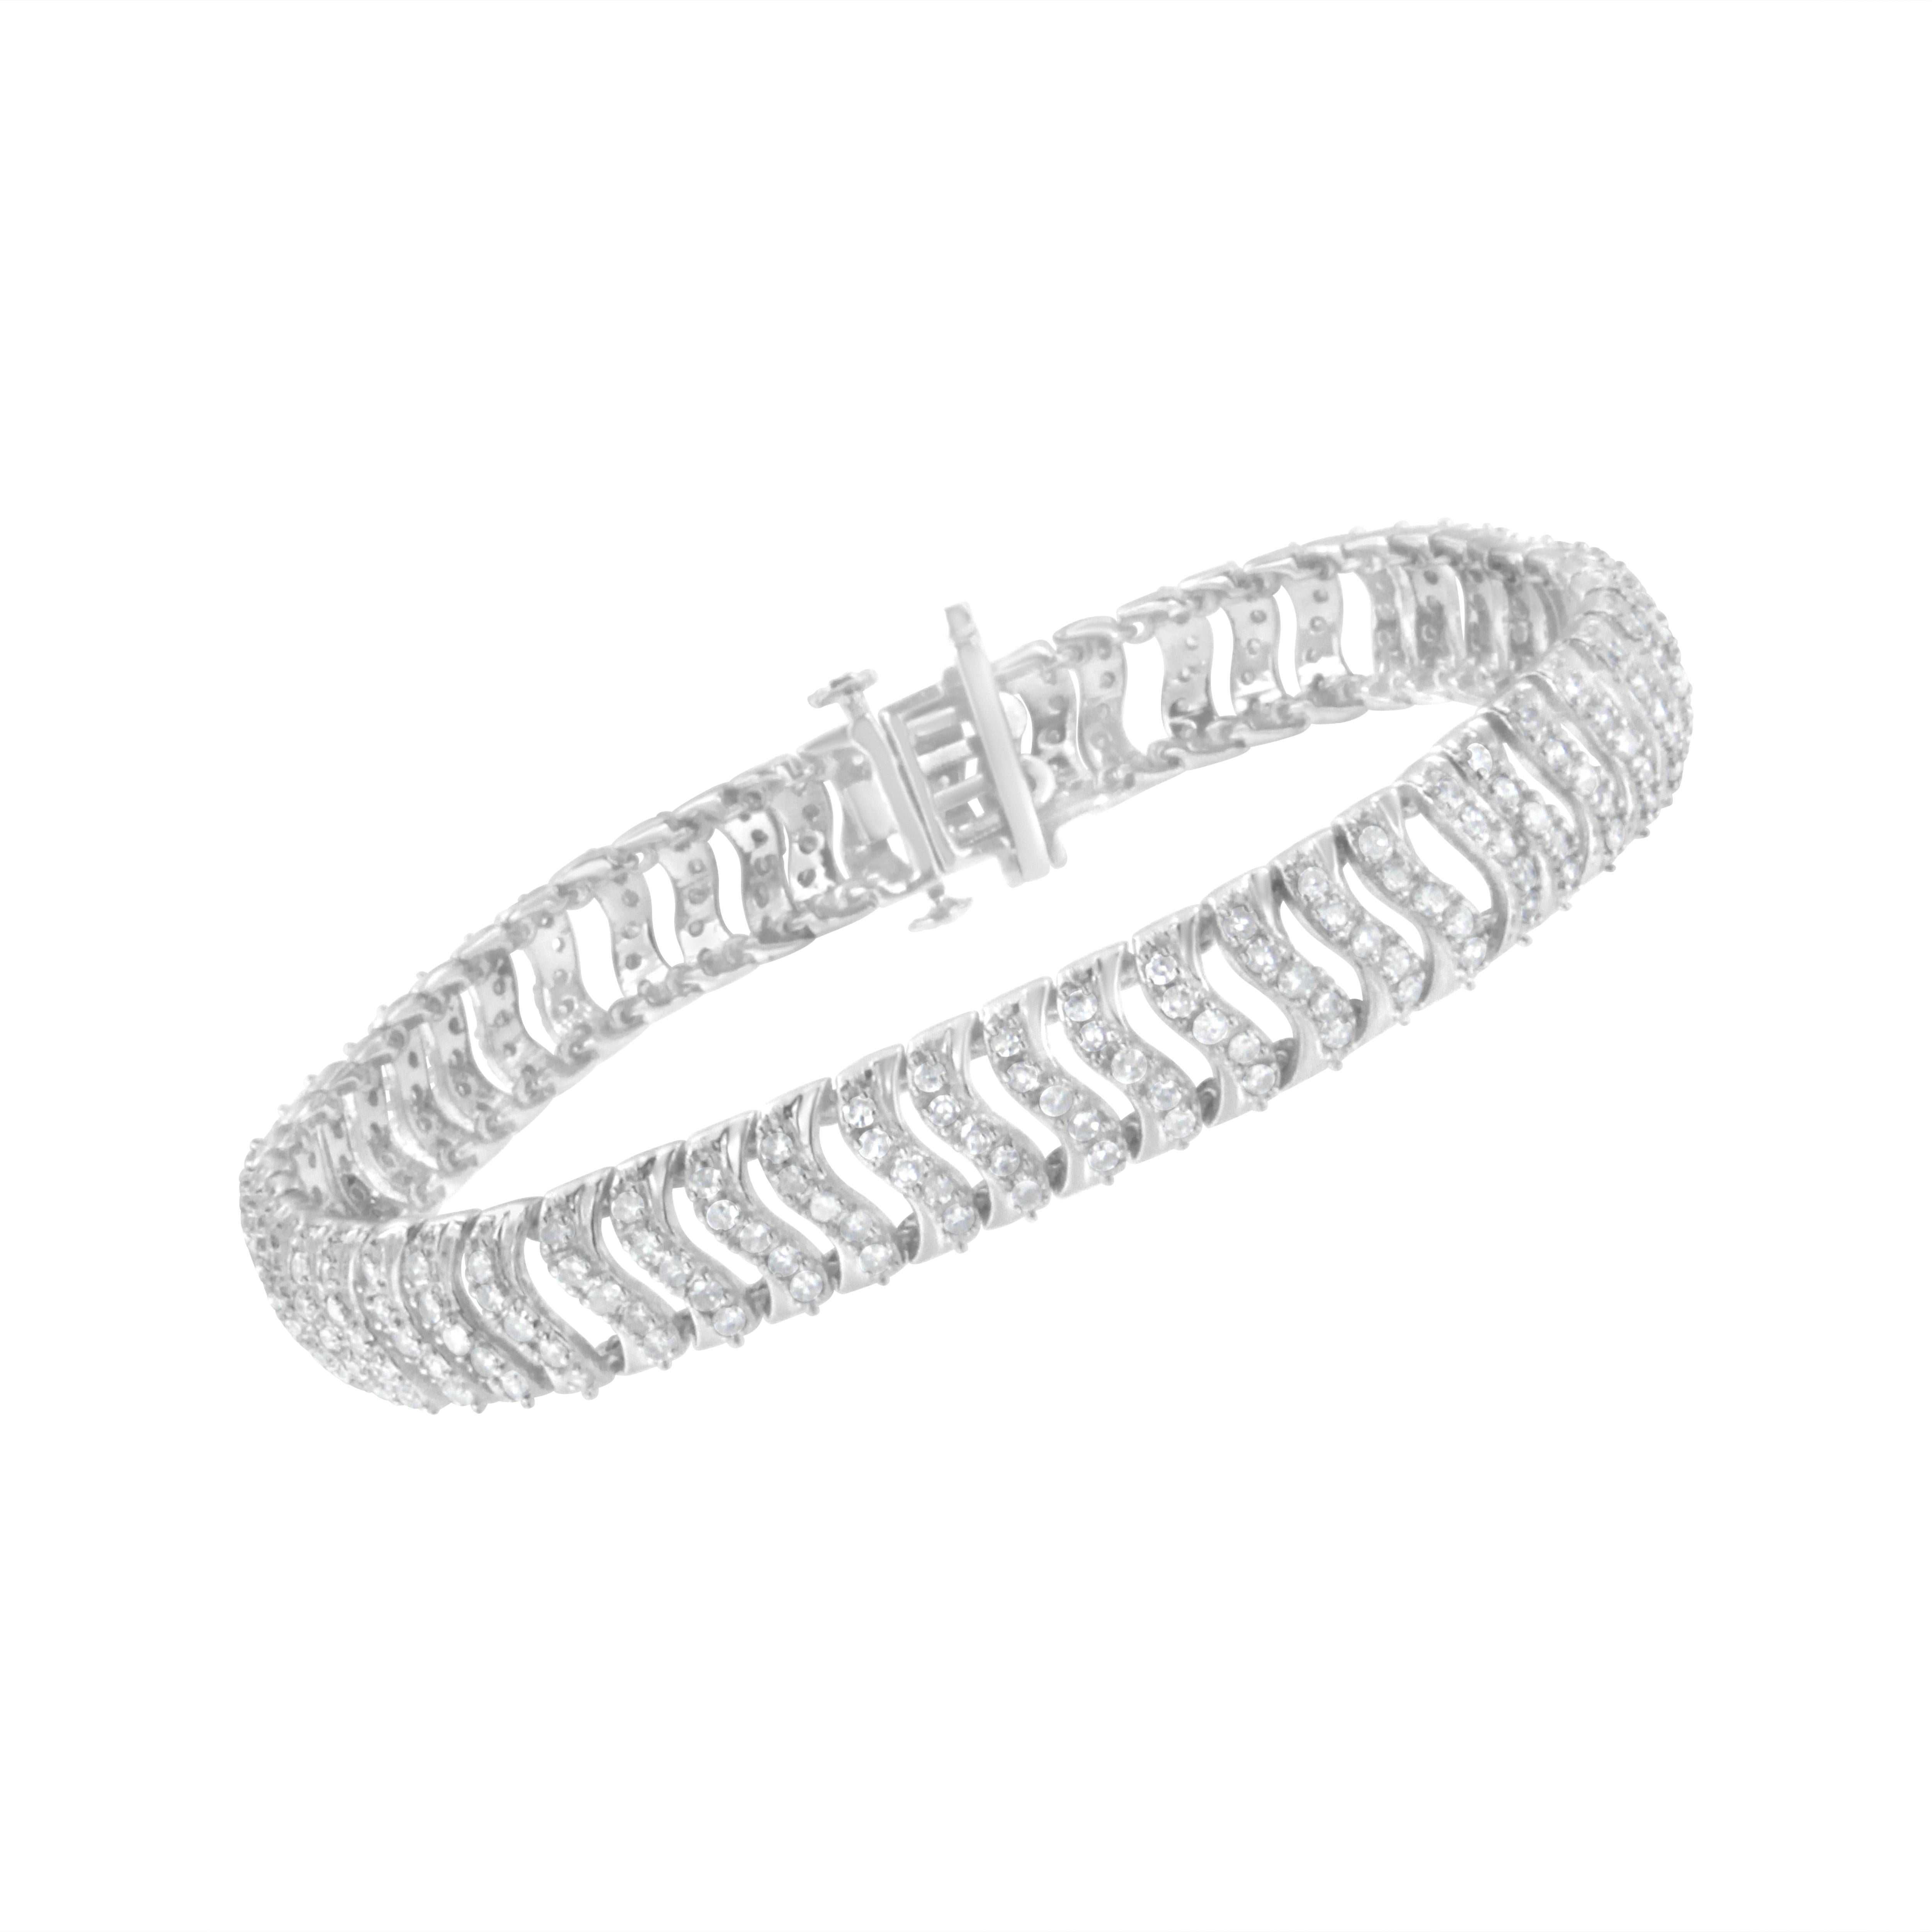 Offrez-vous ce bracelet ondulé en diamant de 3 carats. Ce modèle authentique est fabriqué en argent sterling véritable (92,5 %) recouvert par électrolyse de rhodium véritable (un métal de la famille du platine), un métal précieux qui conservera son